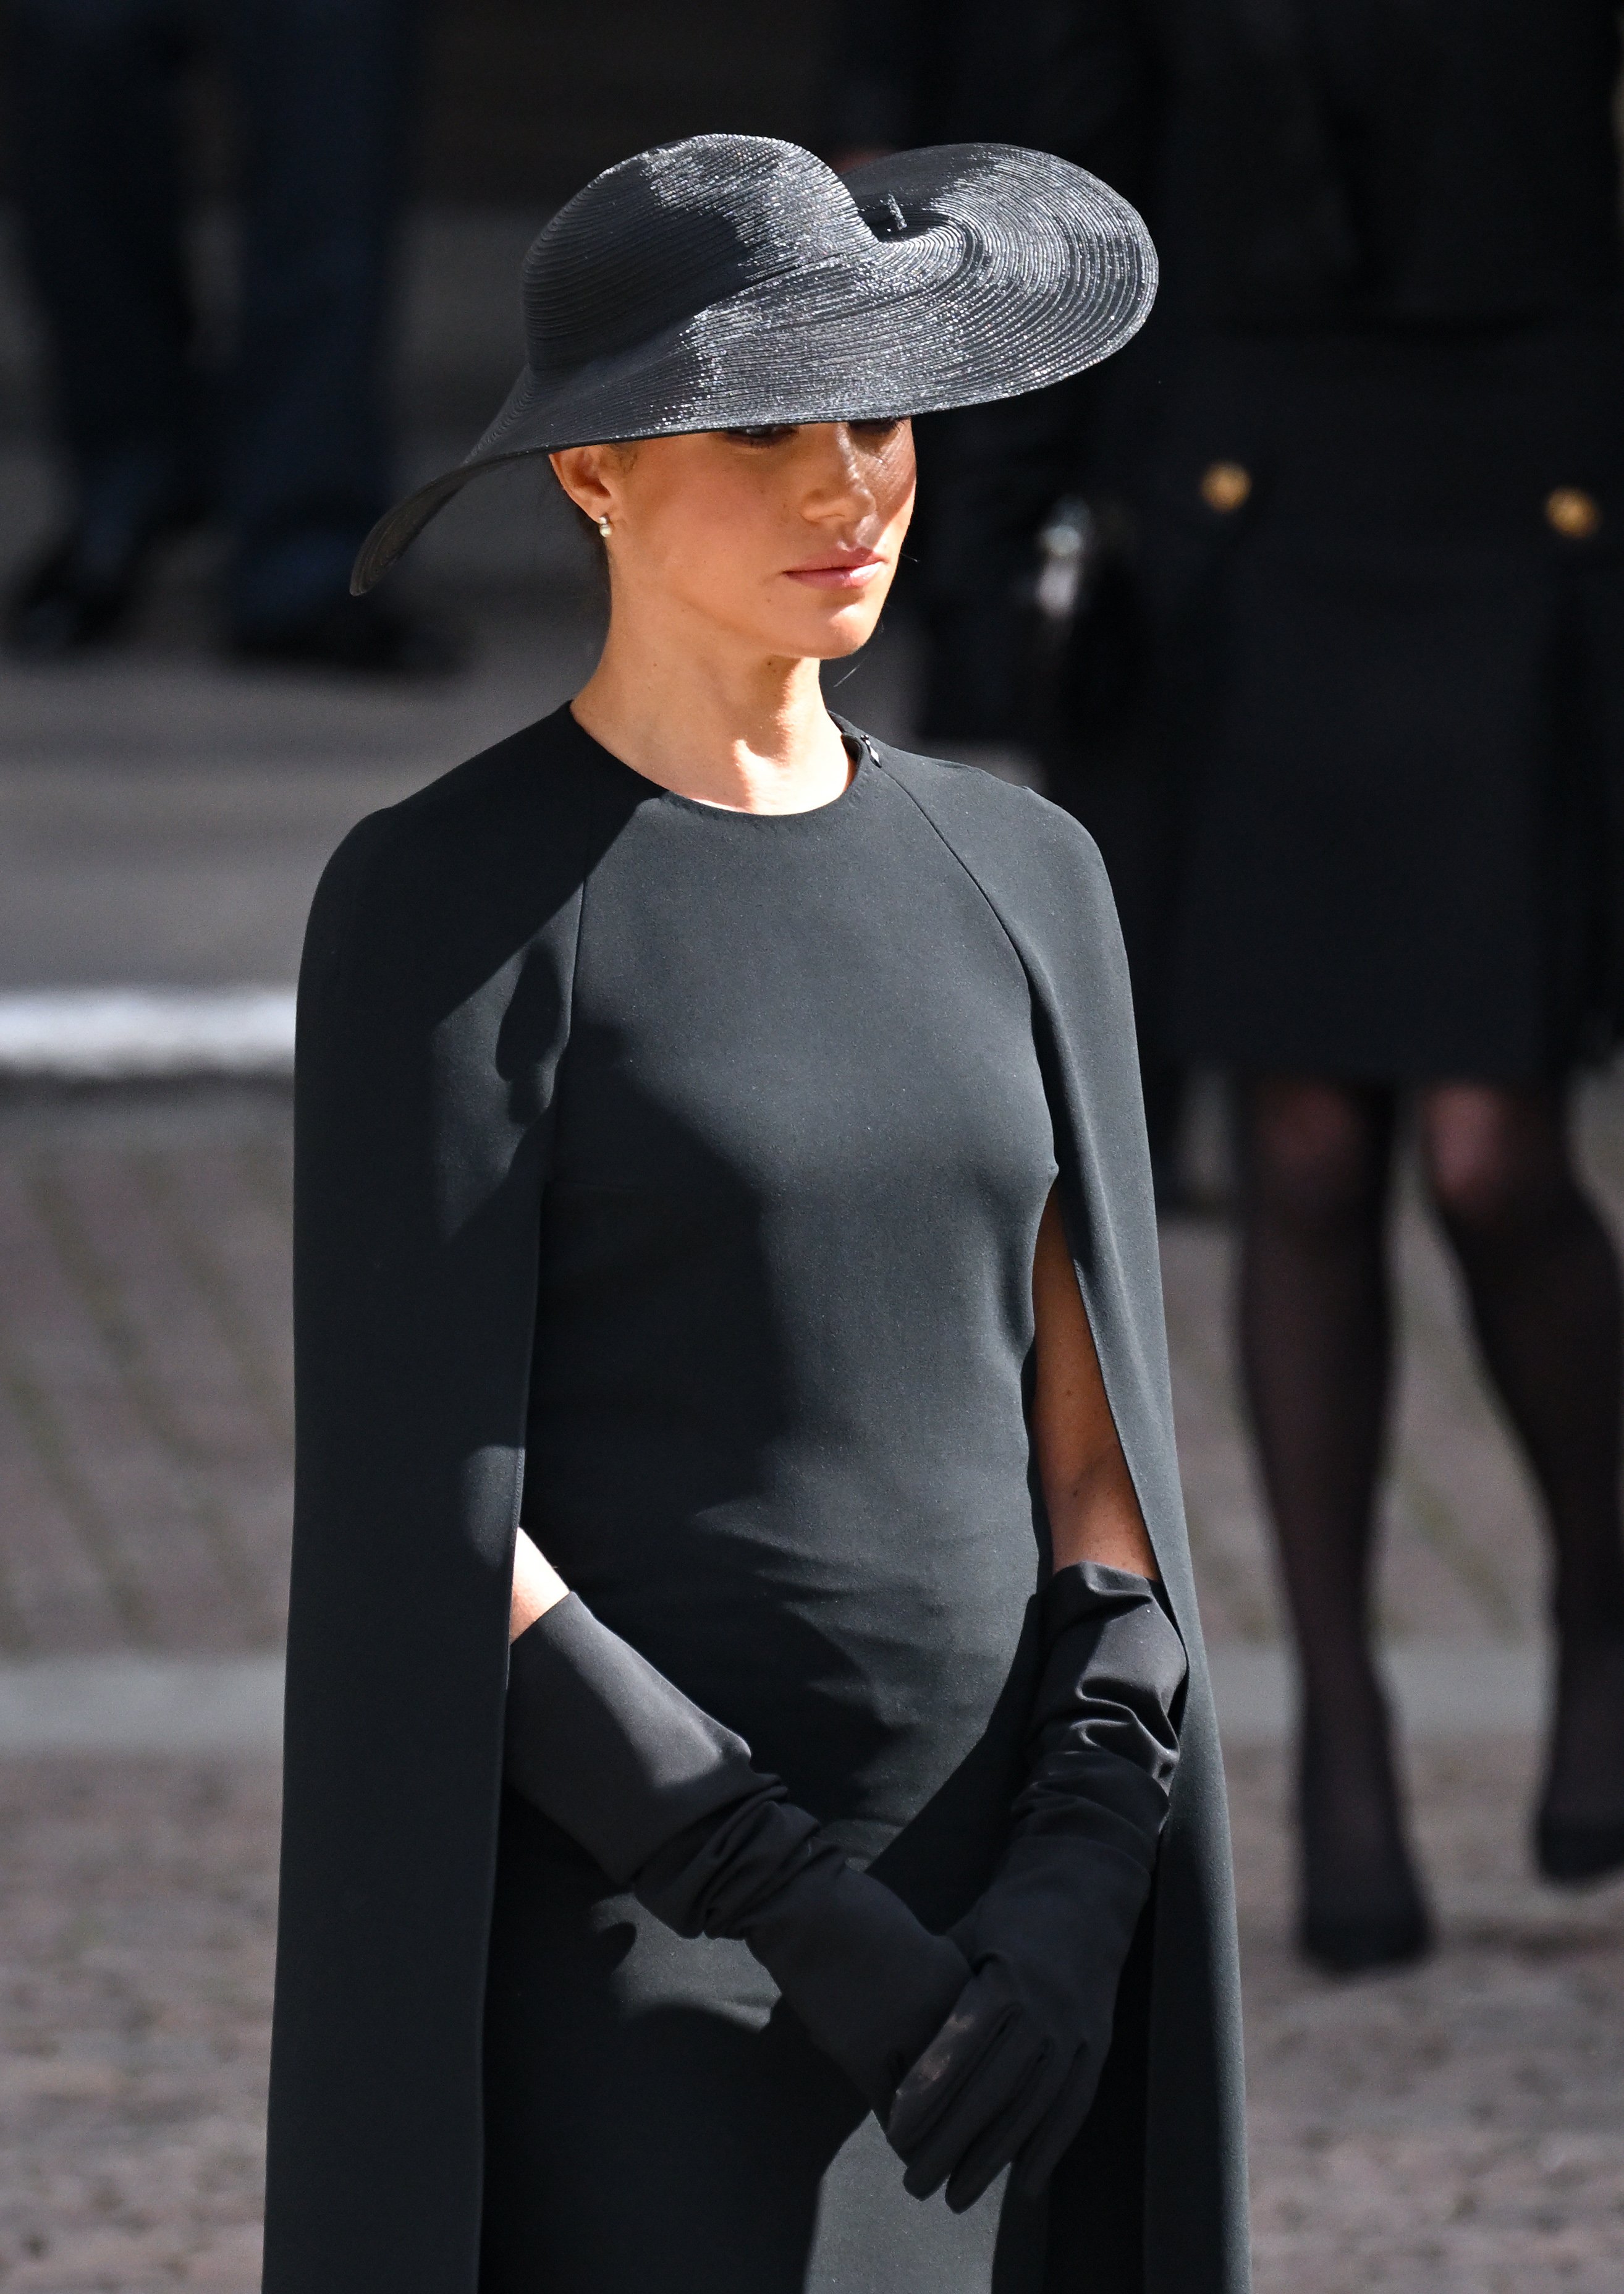 Meghan, Herzogin von Sussex, während des Staatsbegräbnisses von Königin Elizabeth II. in der Westminster Abbey am 19. September 2022 in London, England | Quelle: Getty Images